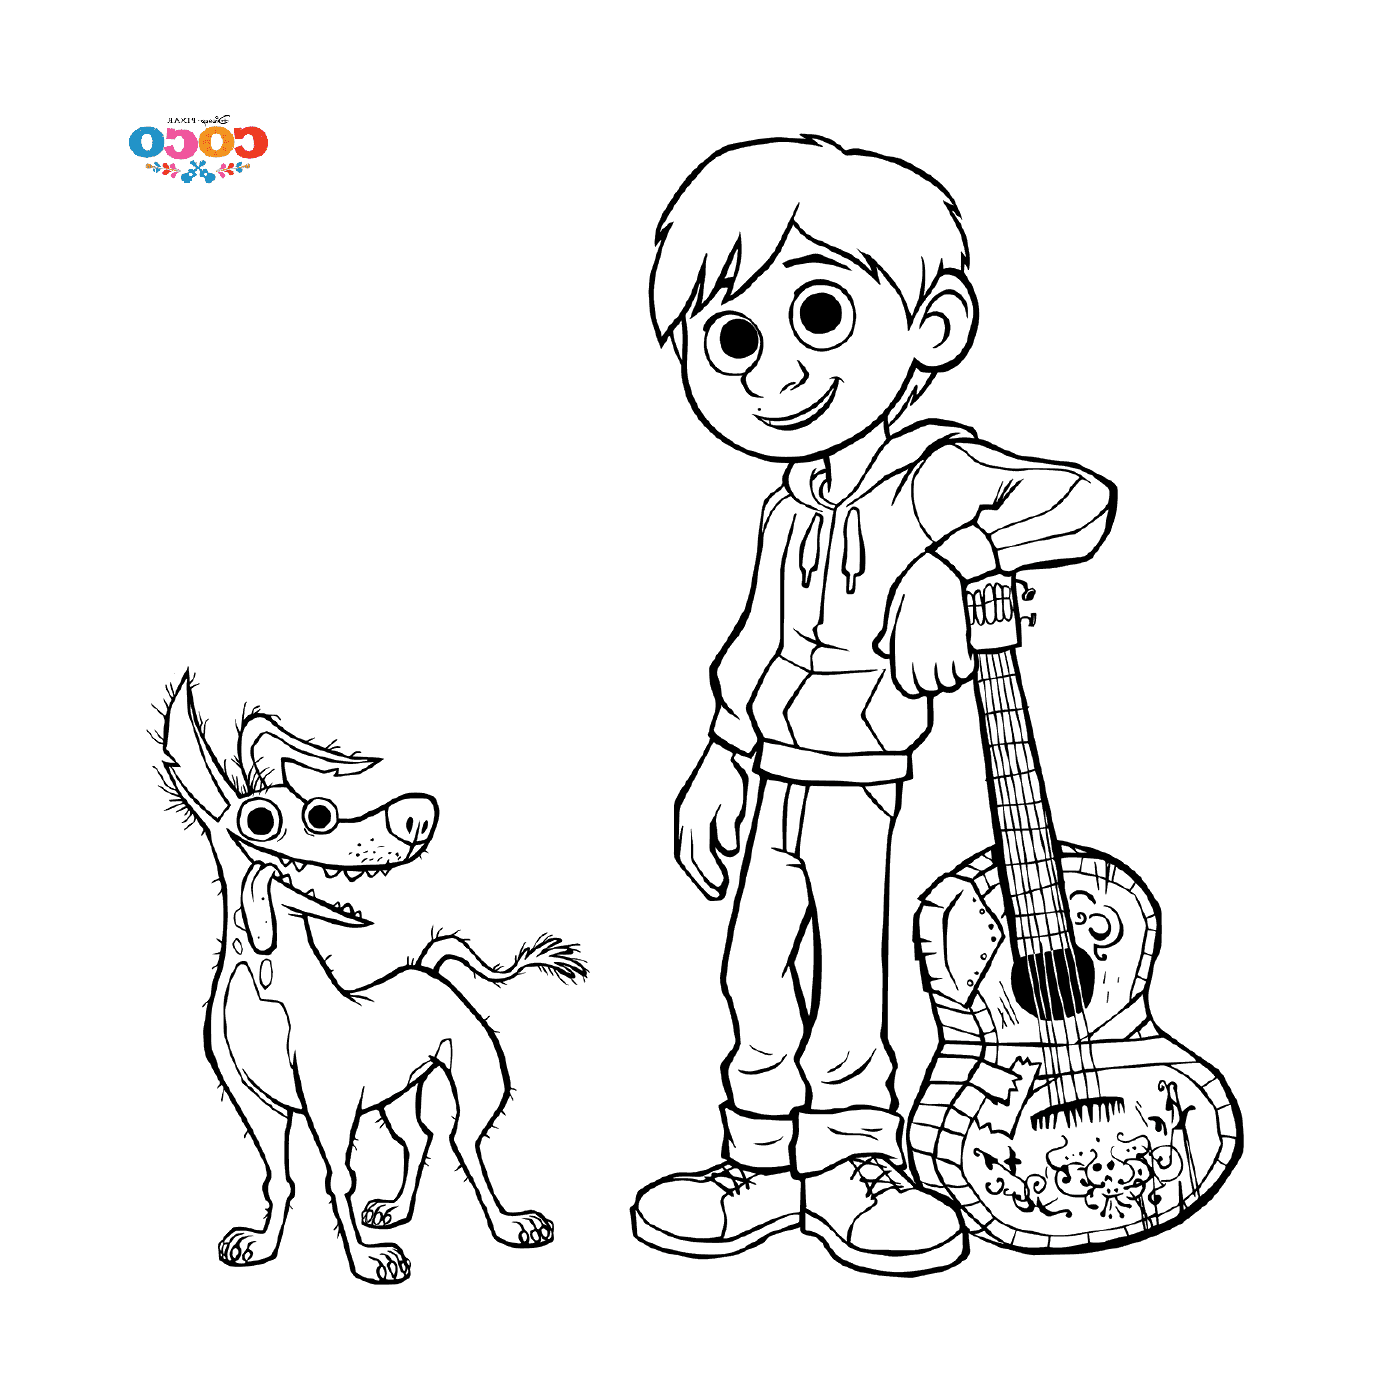  Miguel und Dante der Hund, in Disney Coco 